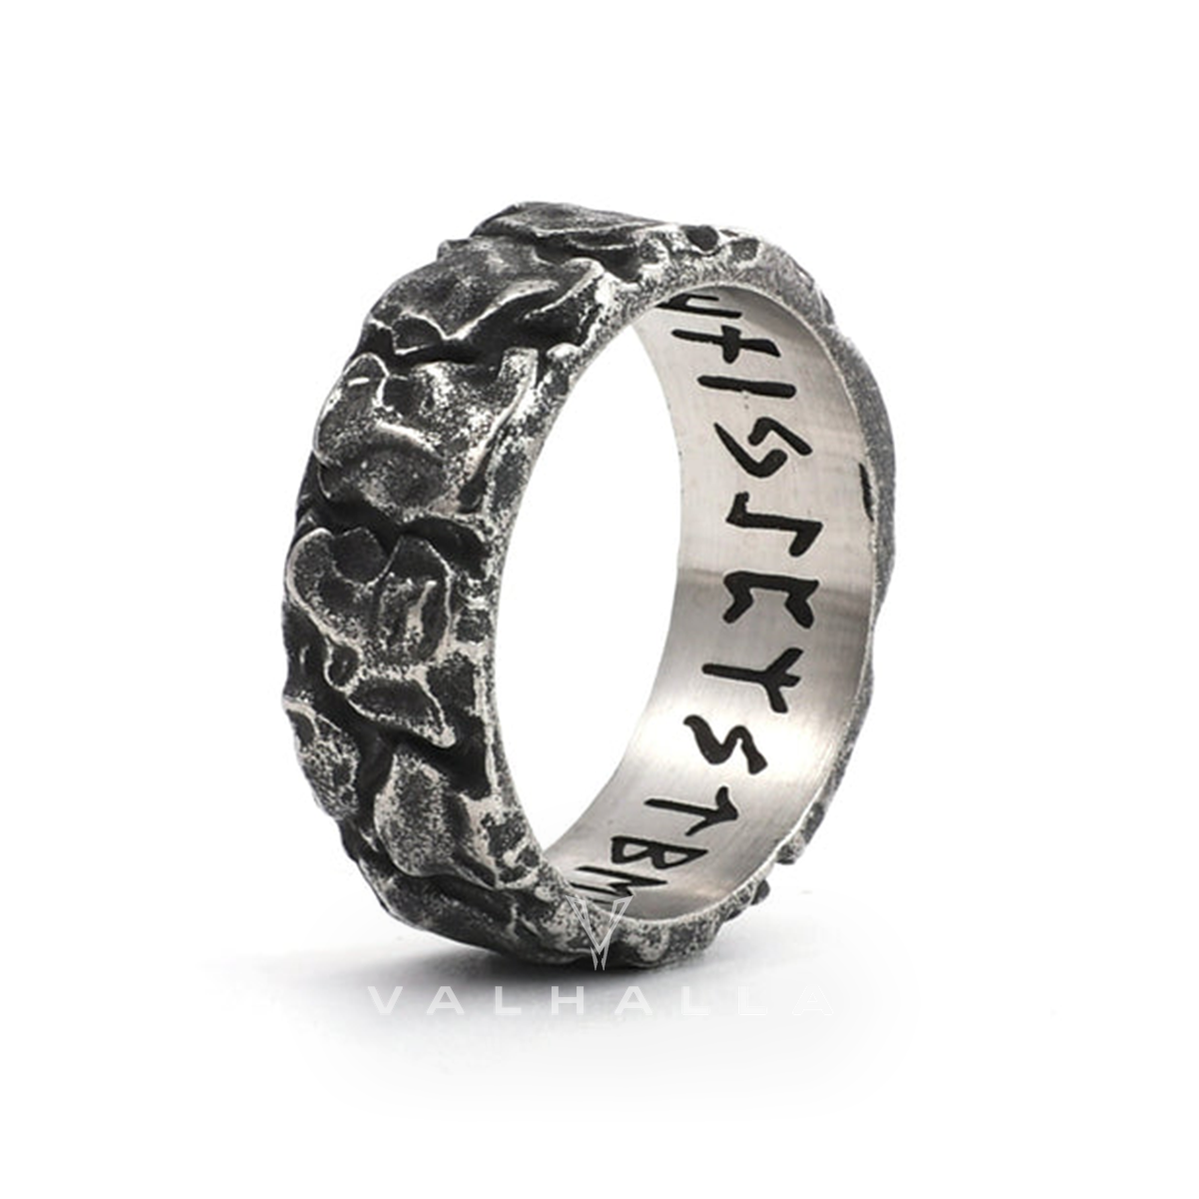 Stone Runes Stainless Steel Viking Ring